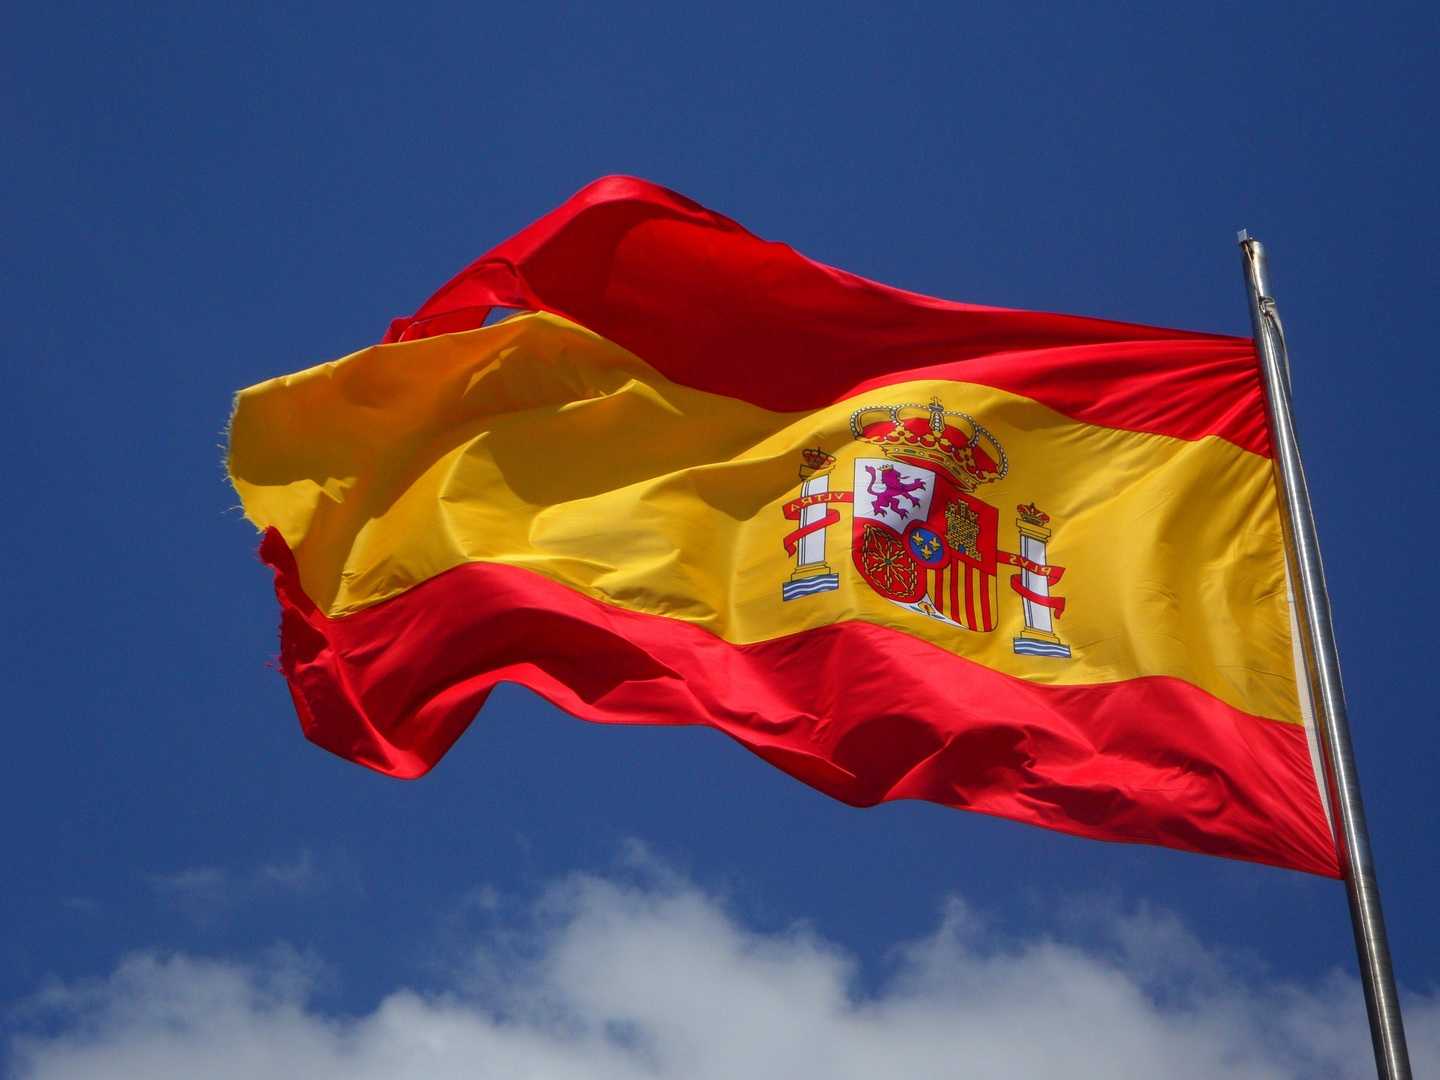 SME SHIPPING บริการส่งของไปสเปน ส่งพัสดุไปสเปน เราทำให้การส่งของเป็นเรื่องง่ายแค่ปลายนิ้ว ส่งของจากไทยไปสเปน อัตราค่าส่งของไปสเปน ค่าส่งของไปสเปน อัตราค่าส่งพัสดุไปสเปน ค่าส่งพัสดุไปสเปน ค่าส่งไปรษณีย์ไปสเปน ส่ง EMS ไปสเปน ส่งของไปสเปนทางเครื่องบิน ส่งของไปสเปนทางเรือ วิธีส่งของไปสเปน ส่งจดหมายไปสเปน ส่งเอกสารไปสเปน ส่งอาหารไปสเปน